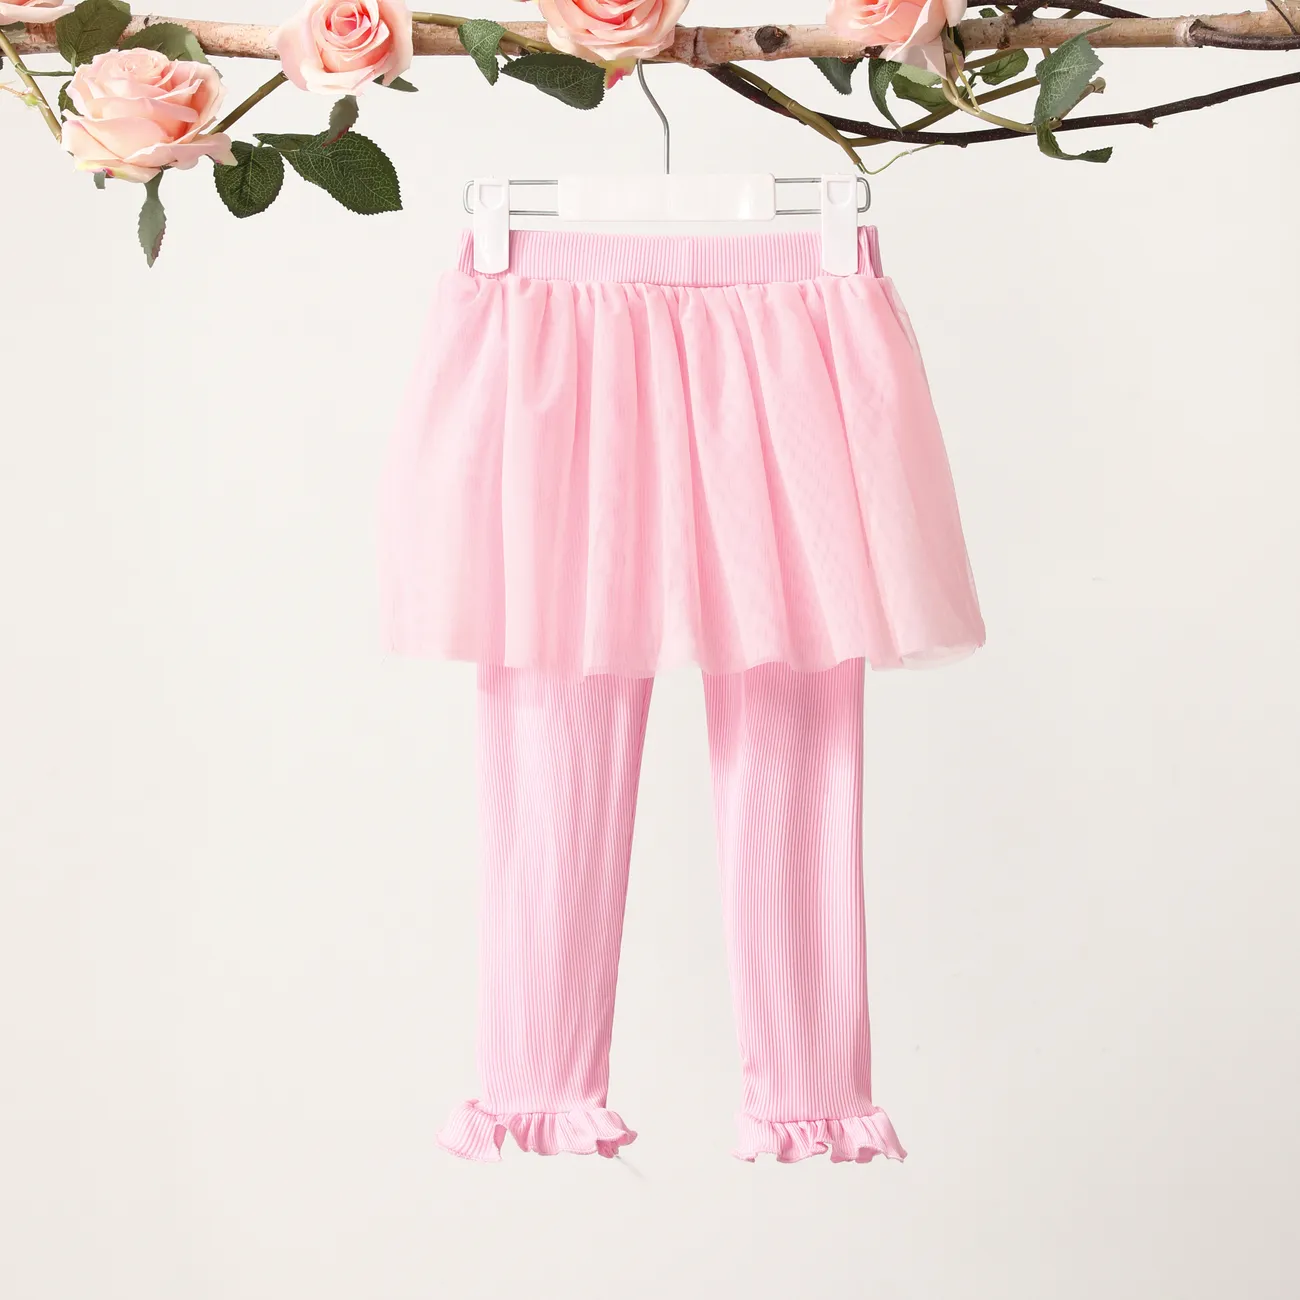  Toddler Girl's Sweet Ruffle Leggings Pants  Pink big image 1